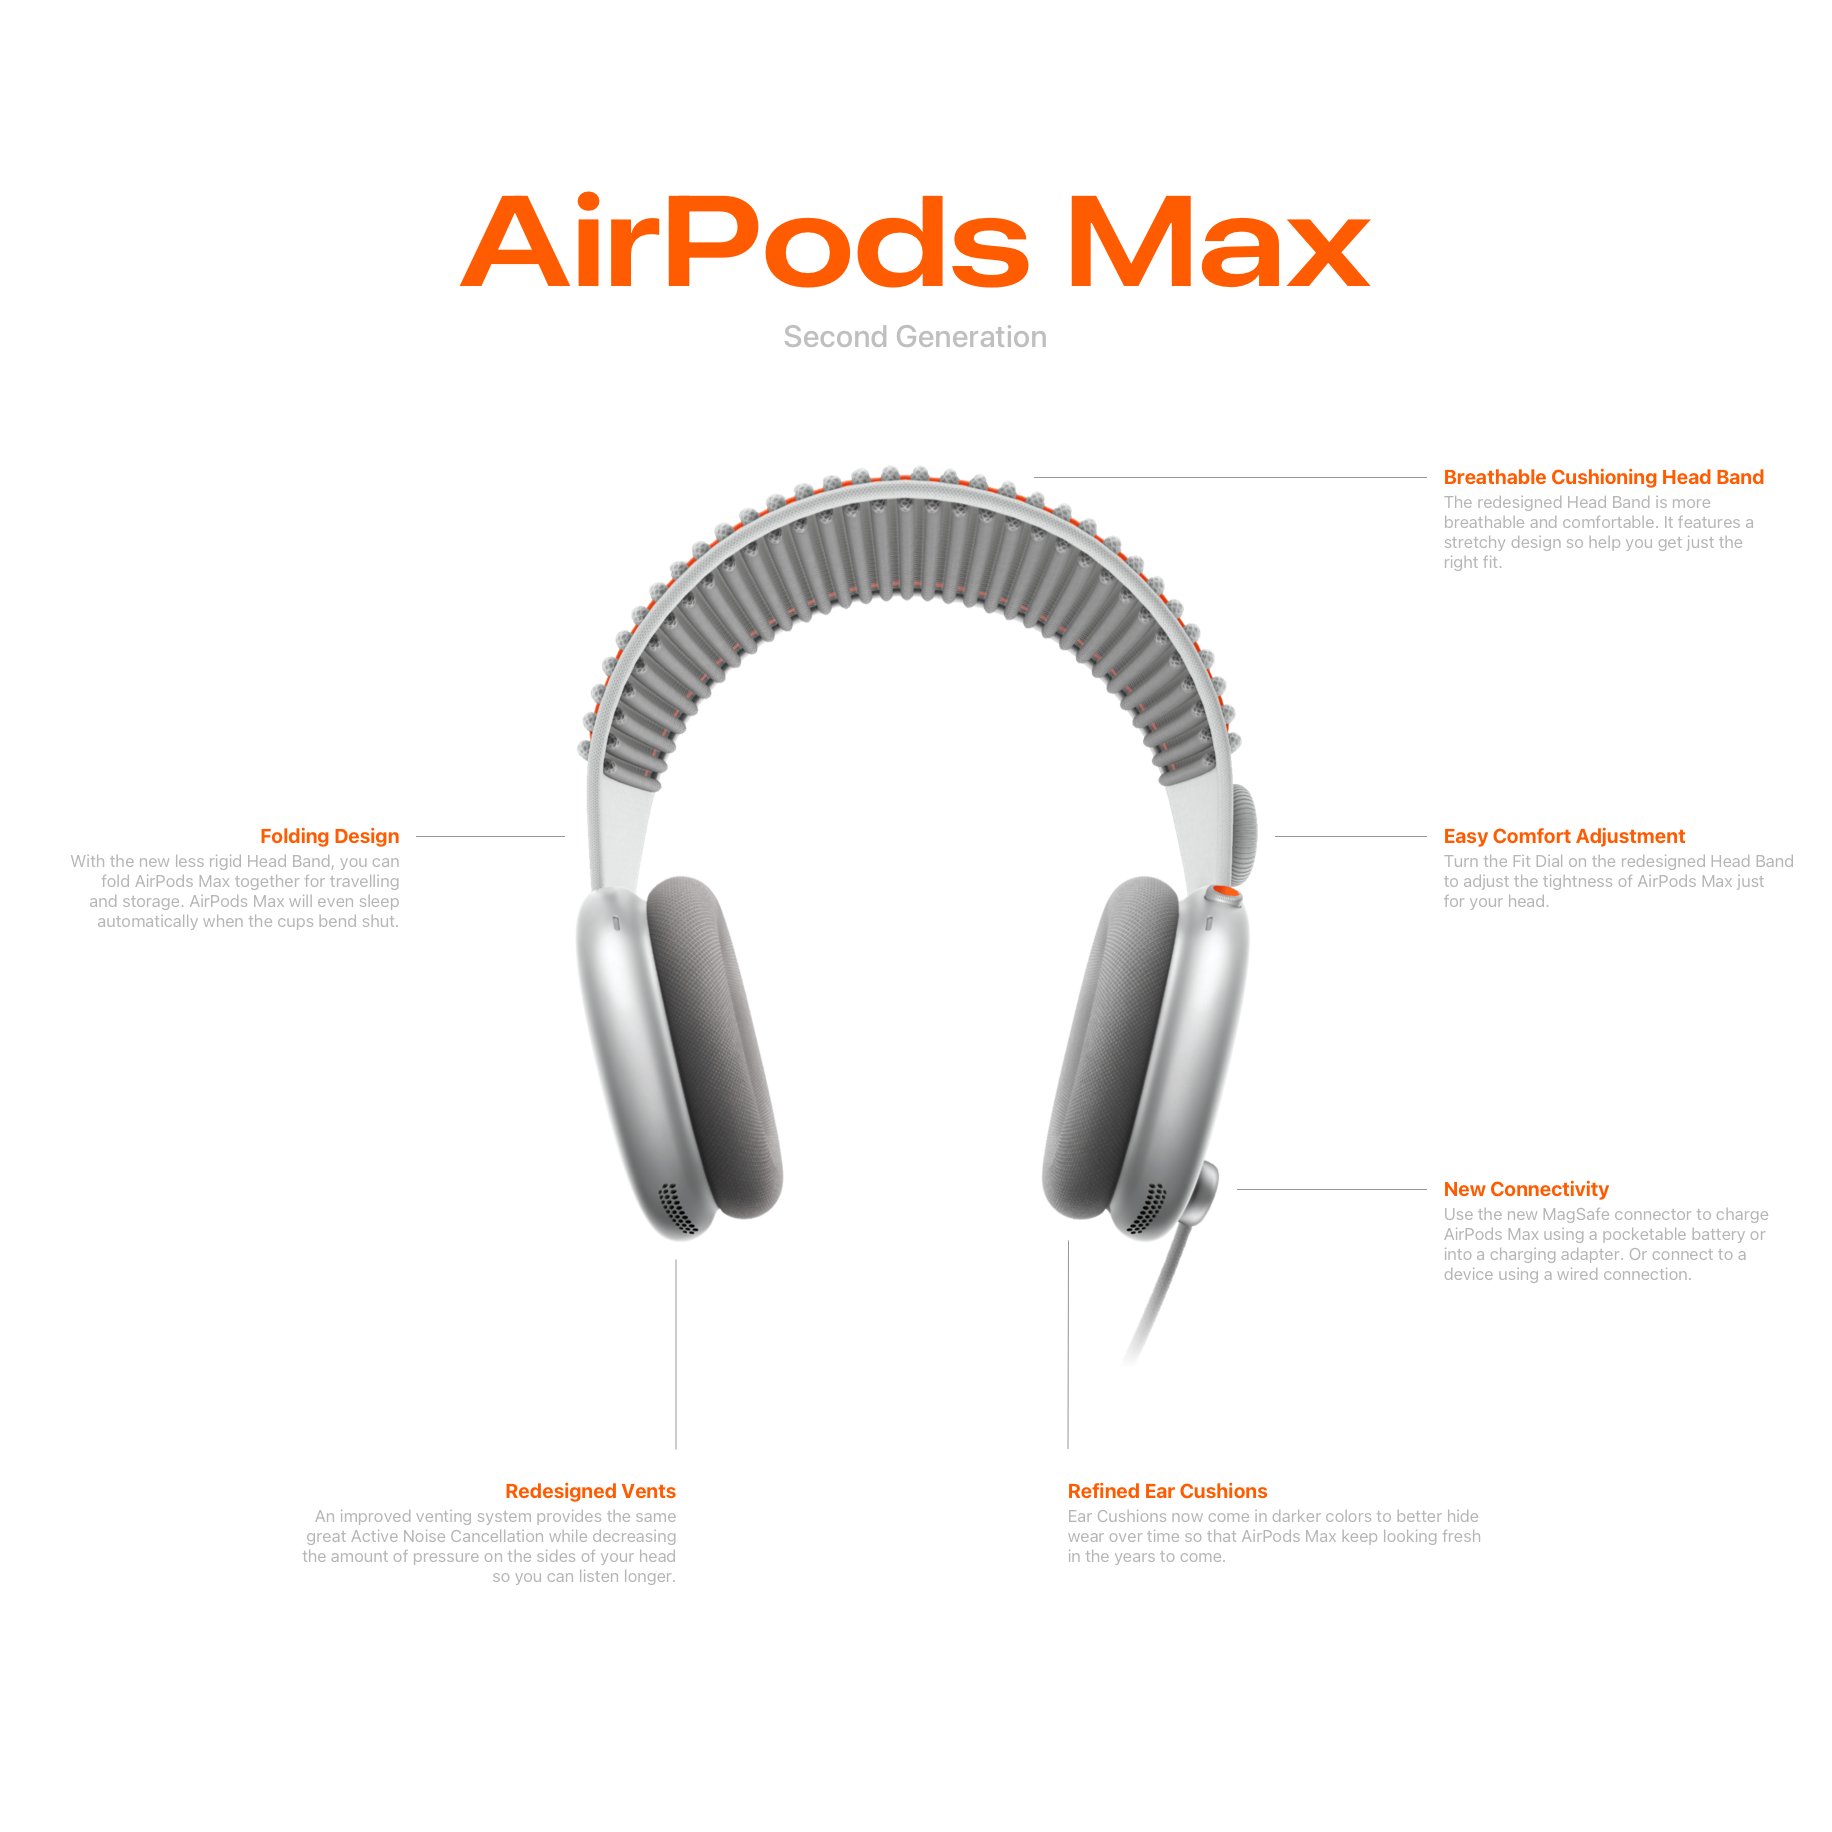 Apple AirPods Max 2 inspirowane Vision Pro - koncept ciekawostki złacze MagSafe, Vision Pro, technologia, słuchawki bezprzewodowe, składane słuchawki, przyszłość, koncept, komfort, kolorowe warianty, inspiracja, innowacje, dźwięk, design, Apple, AirPods Max 2  AirPods Max 2 to oczekiwana druga generacja bezprzewodowych słuchawek Apple, które zdobyły ogromną popularność od momentu swojego debiutu ponad dwa i pół roku temu. airpodsMax2 1